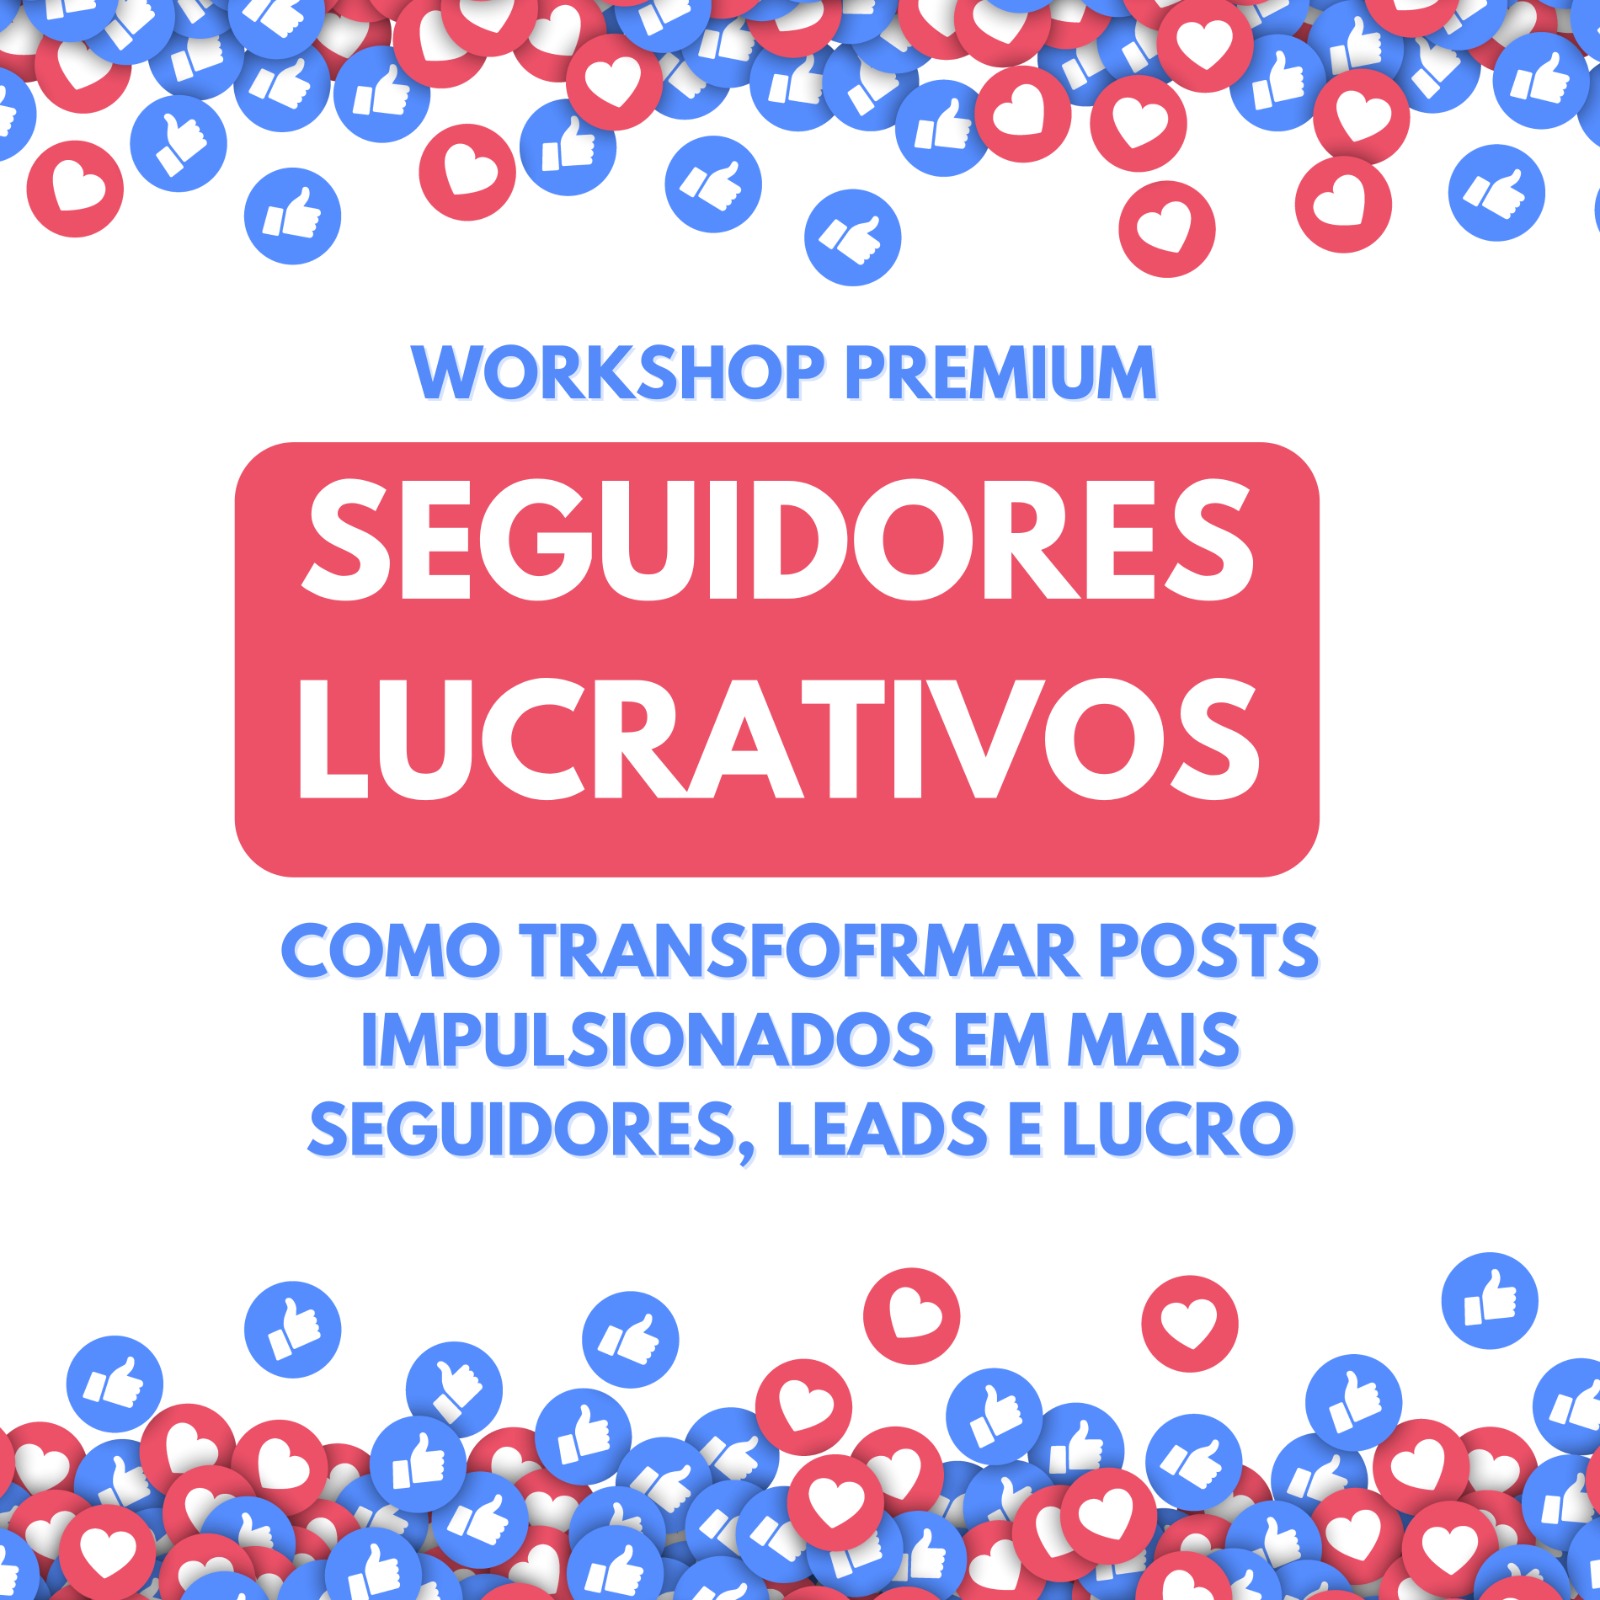 Workshop Premium: Seguidores Lucrativos (10 de Fevereiro às 14h - Brasília) 56